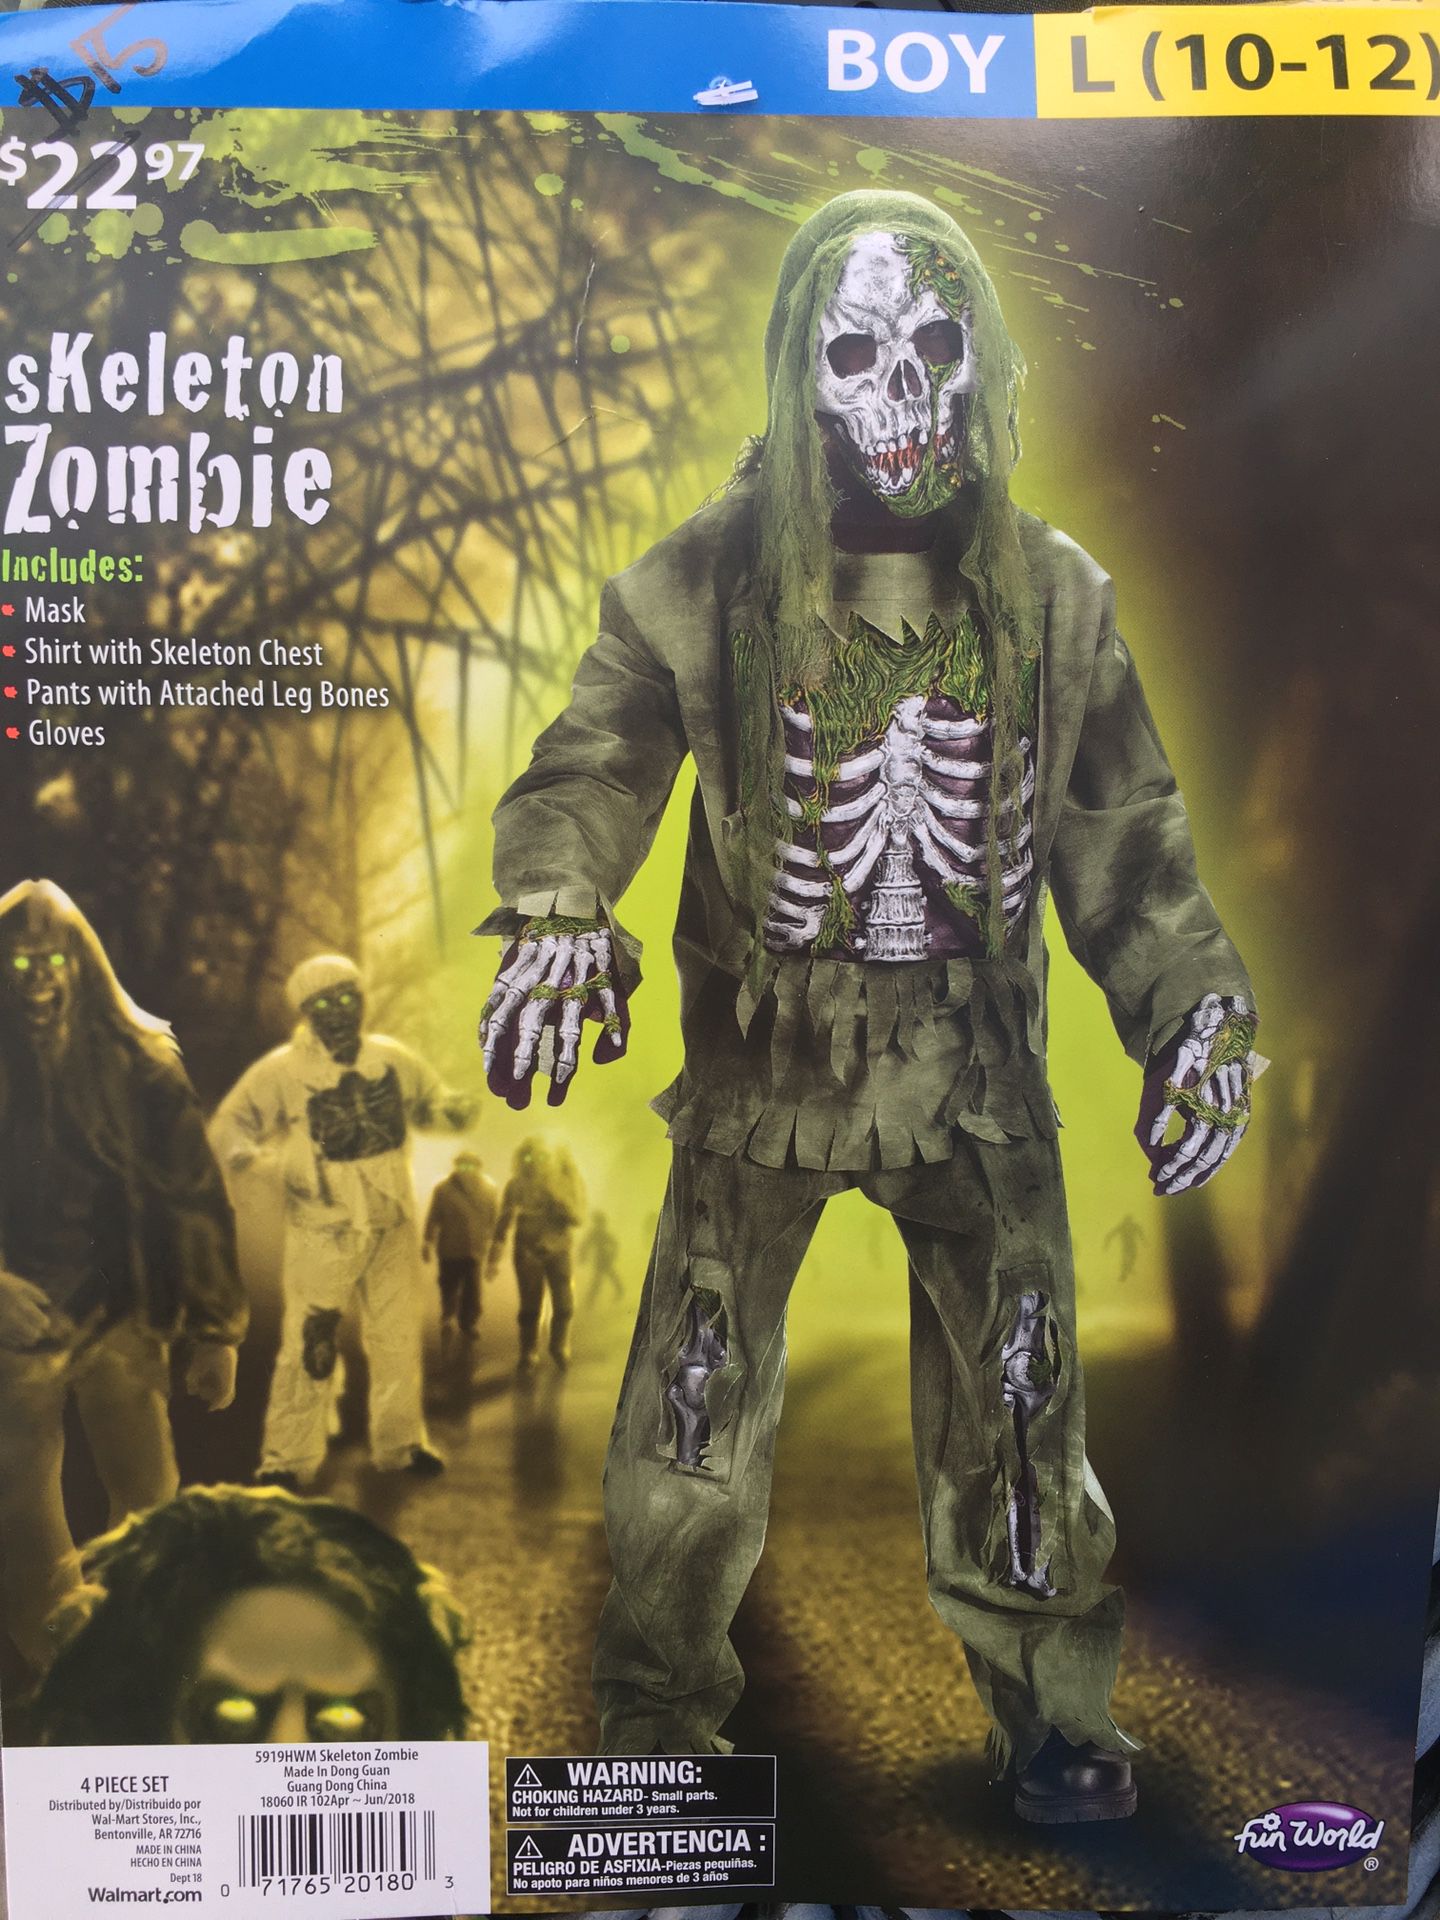 Zombie skeleton! Halloween costumes